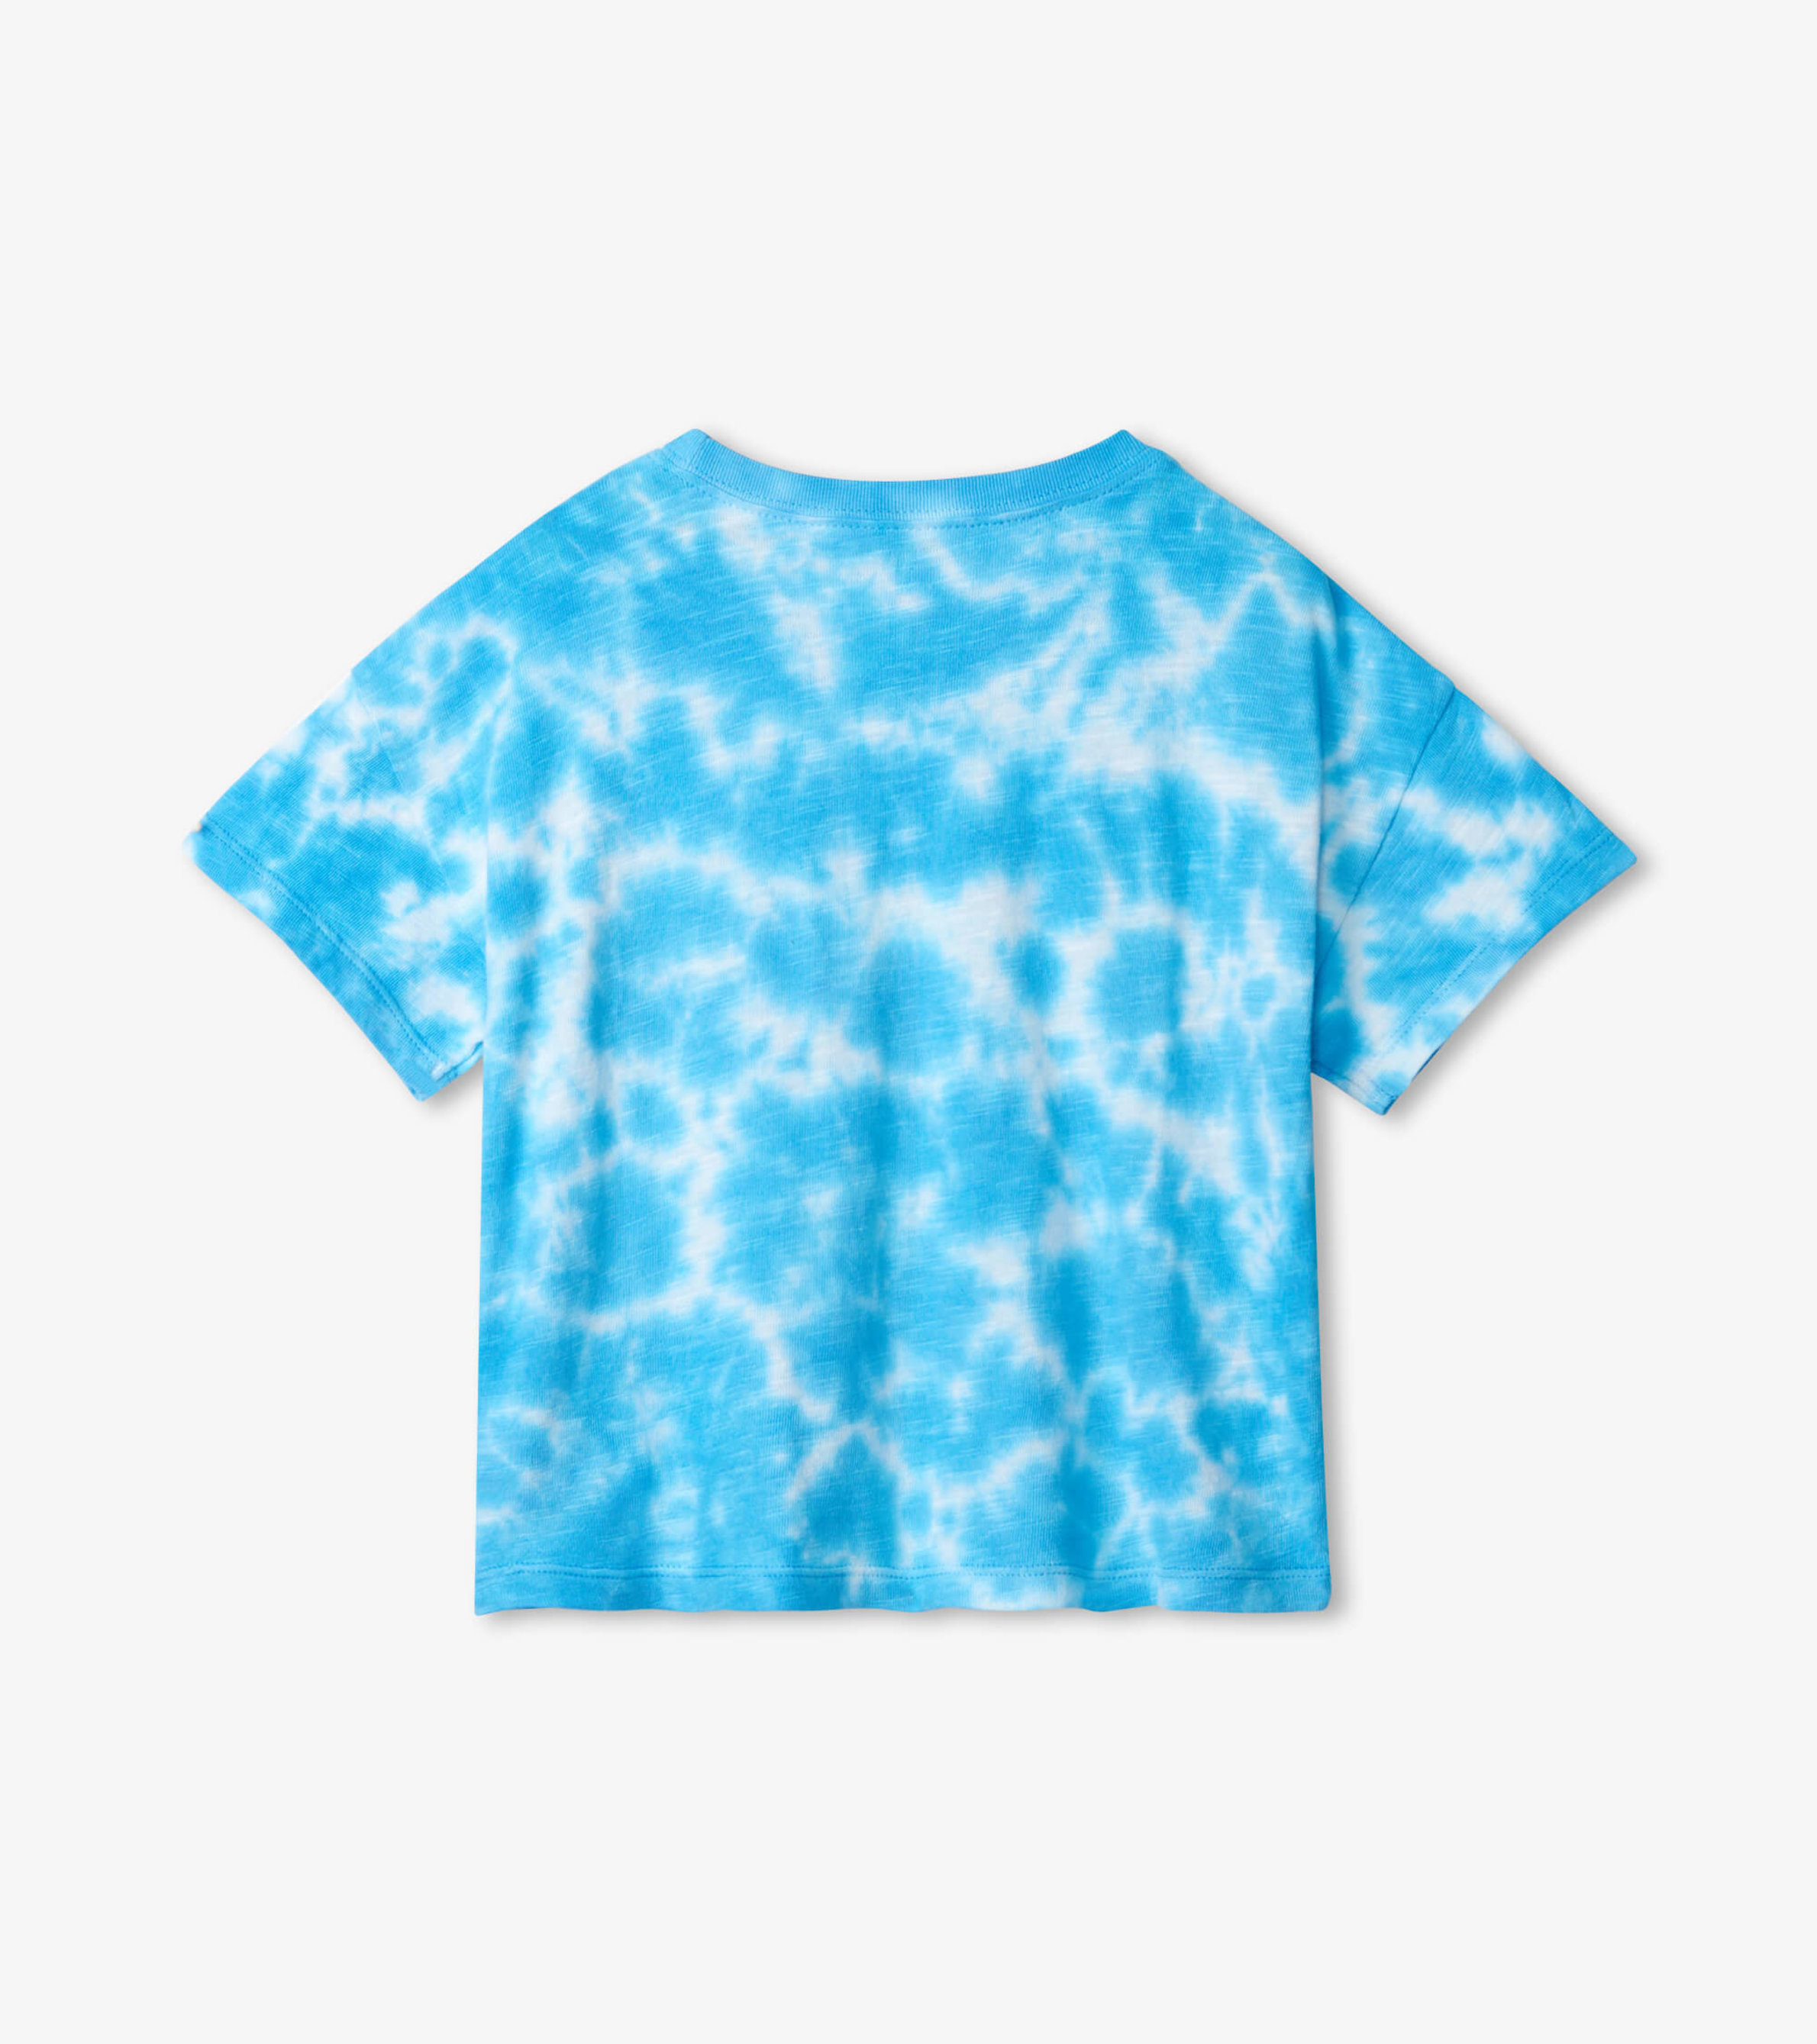 Hatley Little Girl's & Girl's Sky Tie-Dye T-Shirt - Blue - Size 2